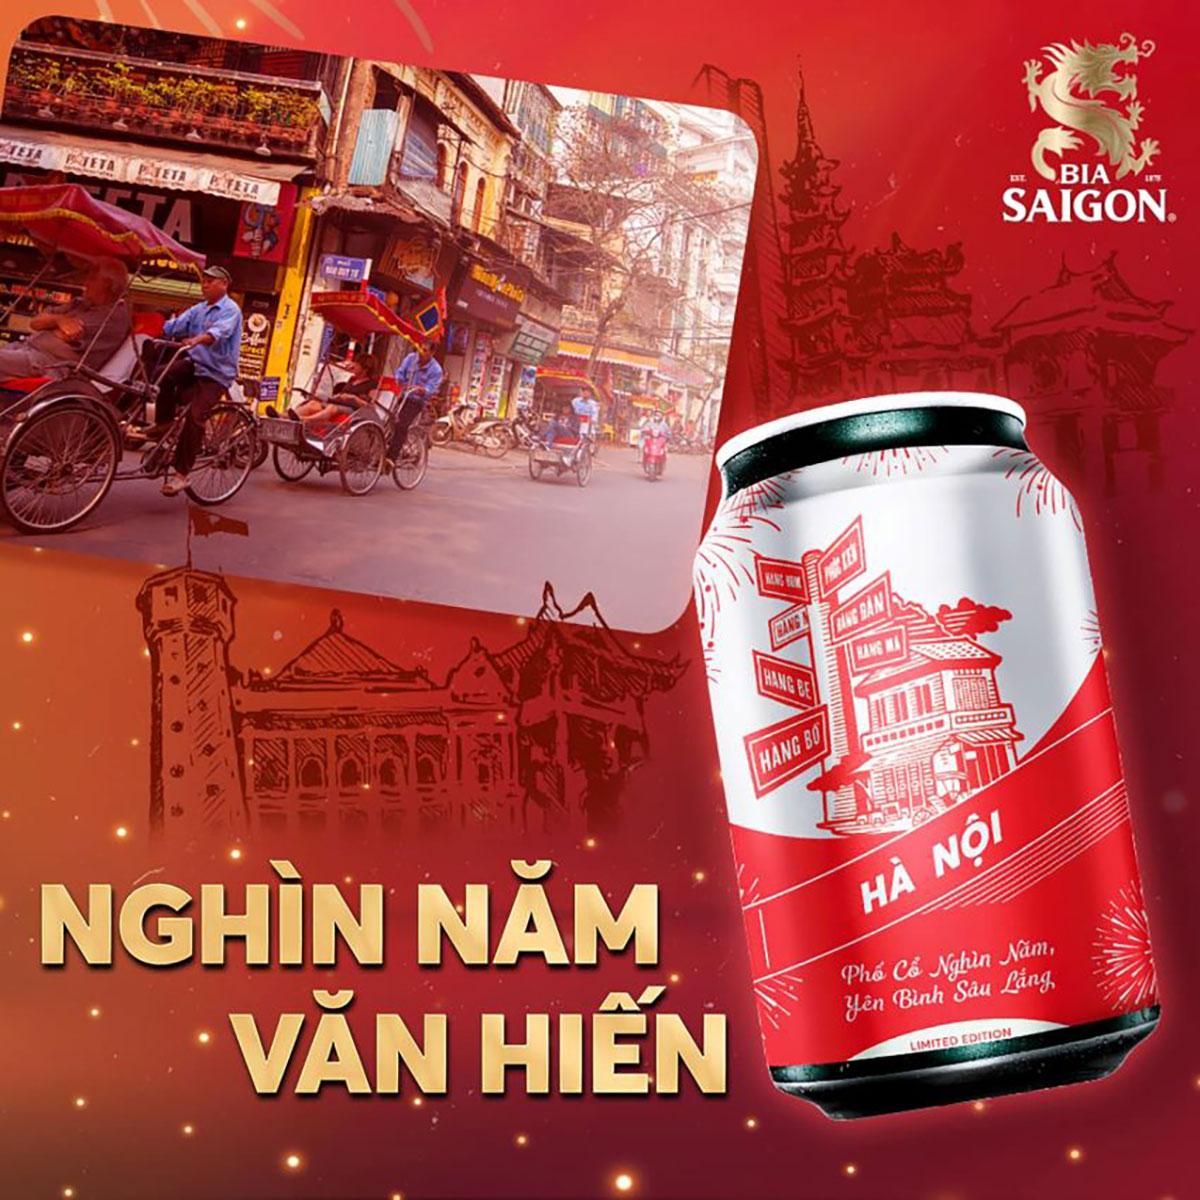 Bia Saigon: Sự kết hợp hoàn hảo của hương vị đậm đà và mát lạnh, Bia Saigon hứa hẹn sẽ đem lại cho bạn cảm giác thú vị và sảng khoái trong từng hơi thở. Hãy đón xem hình ảnh liên quan đến Bia Saigon để tận hưởng trọn vẹn hương vị của loại bia tuyệt vời này.